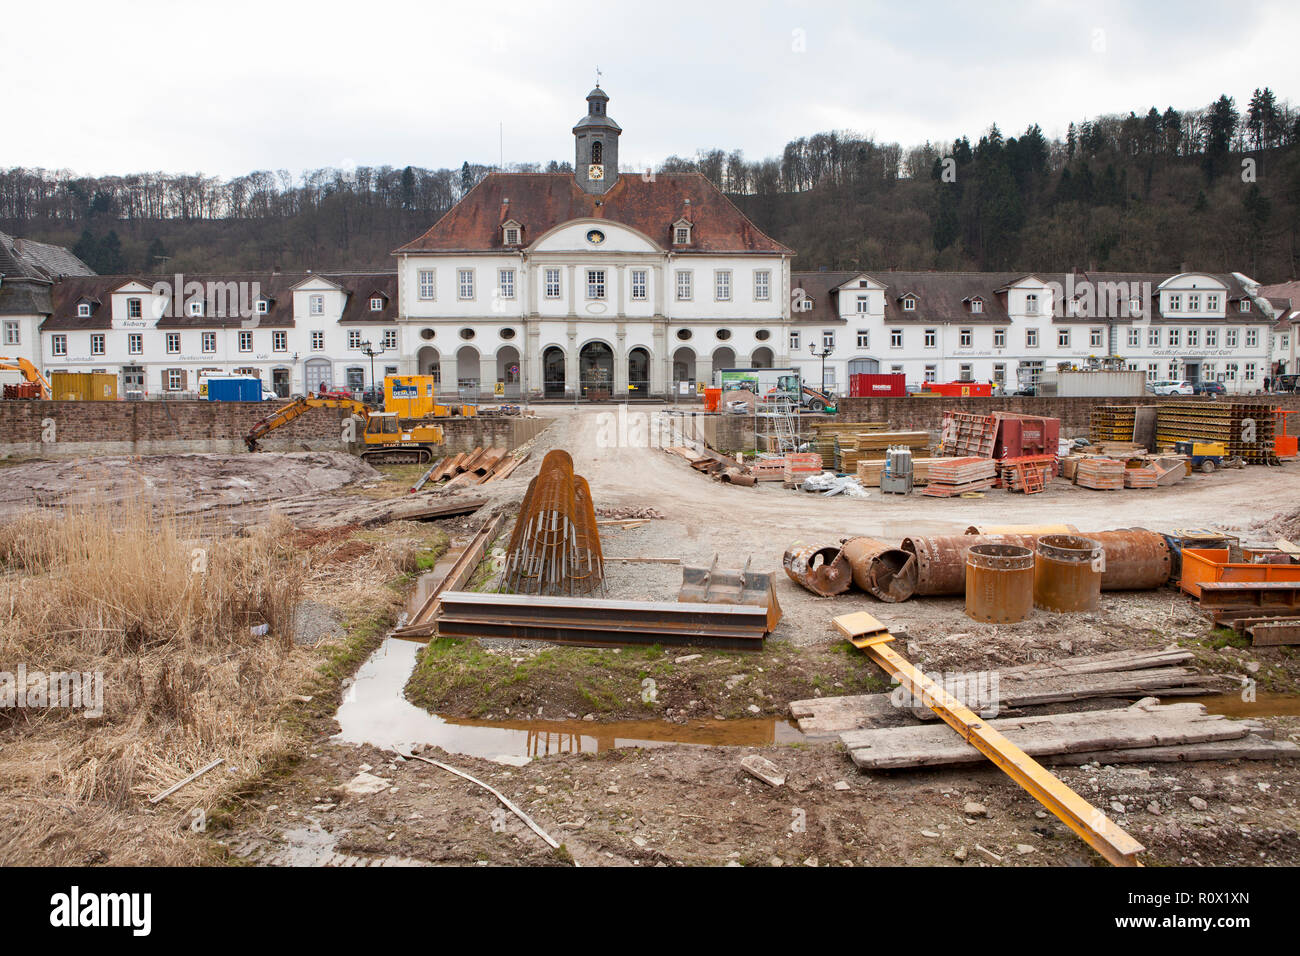 Bad Karlshafen, site de construction en 2018, la vallée de la Weser, Weser Uplands, Thuringe, Hesse, Germany, Europe Banque D'Images